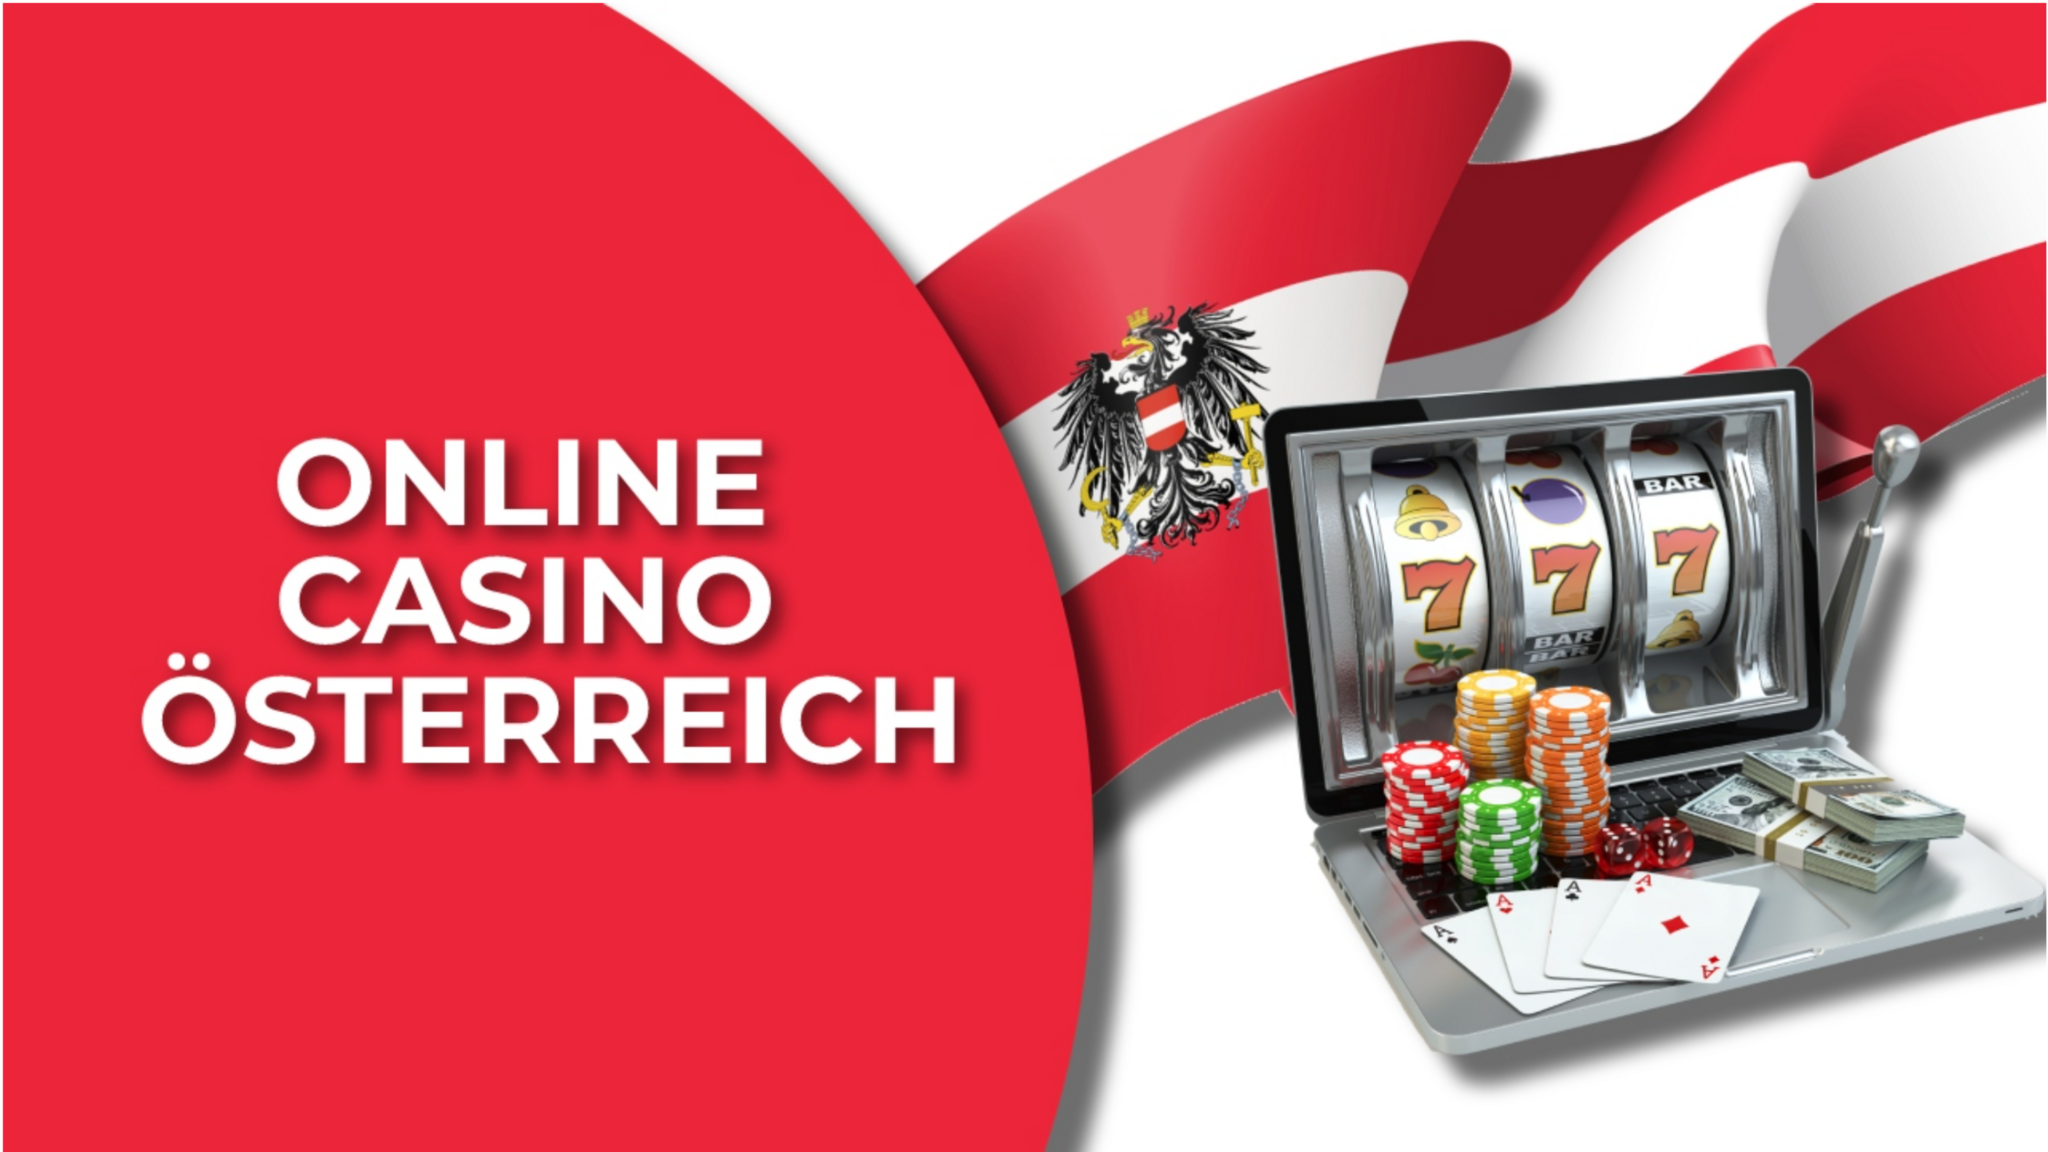 Hast du gehört? Online Casino Österreich ist Ihre beste Wahl, um zu wachsen